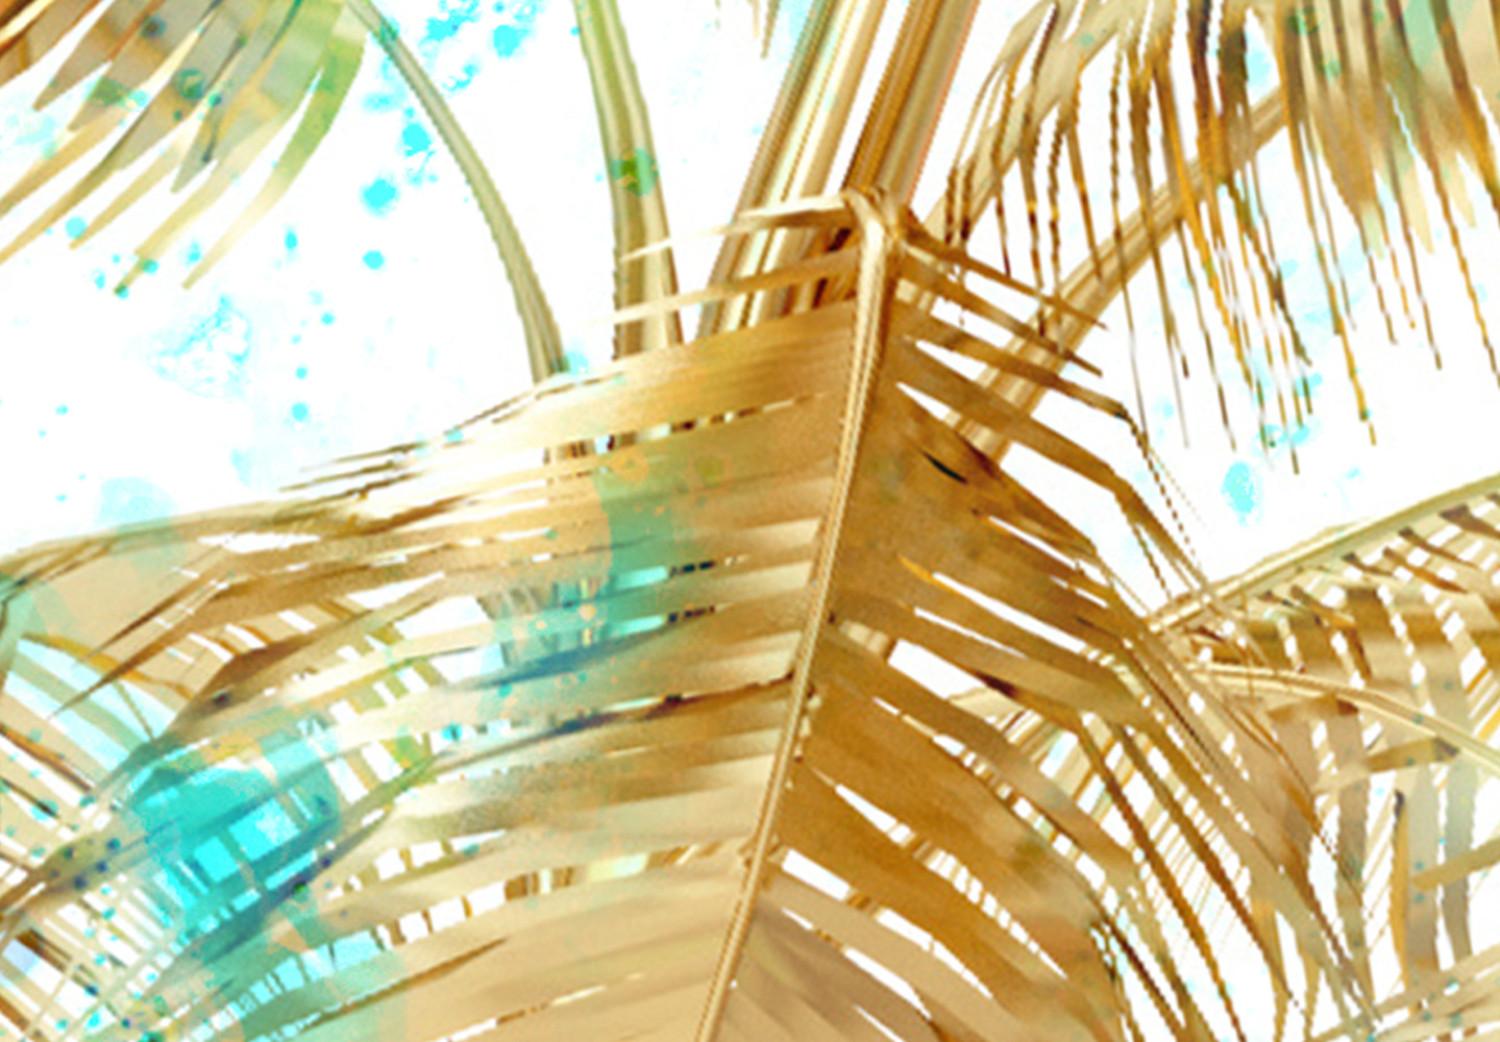 Cuadro Hojas de palmera doradas - paisaje tropical sobre fondo azul